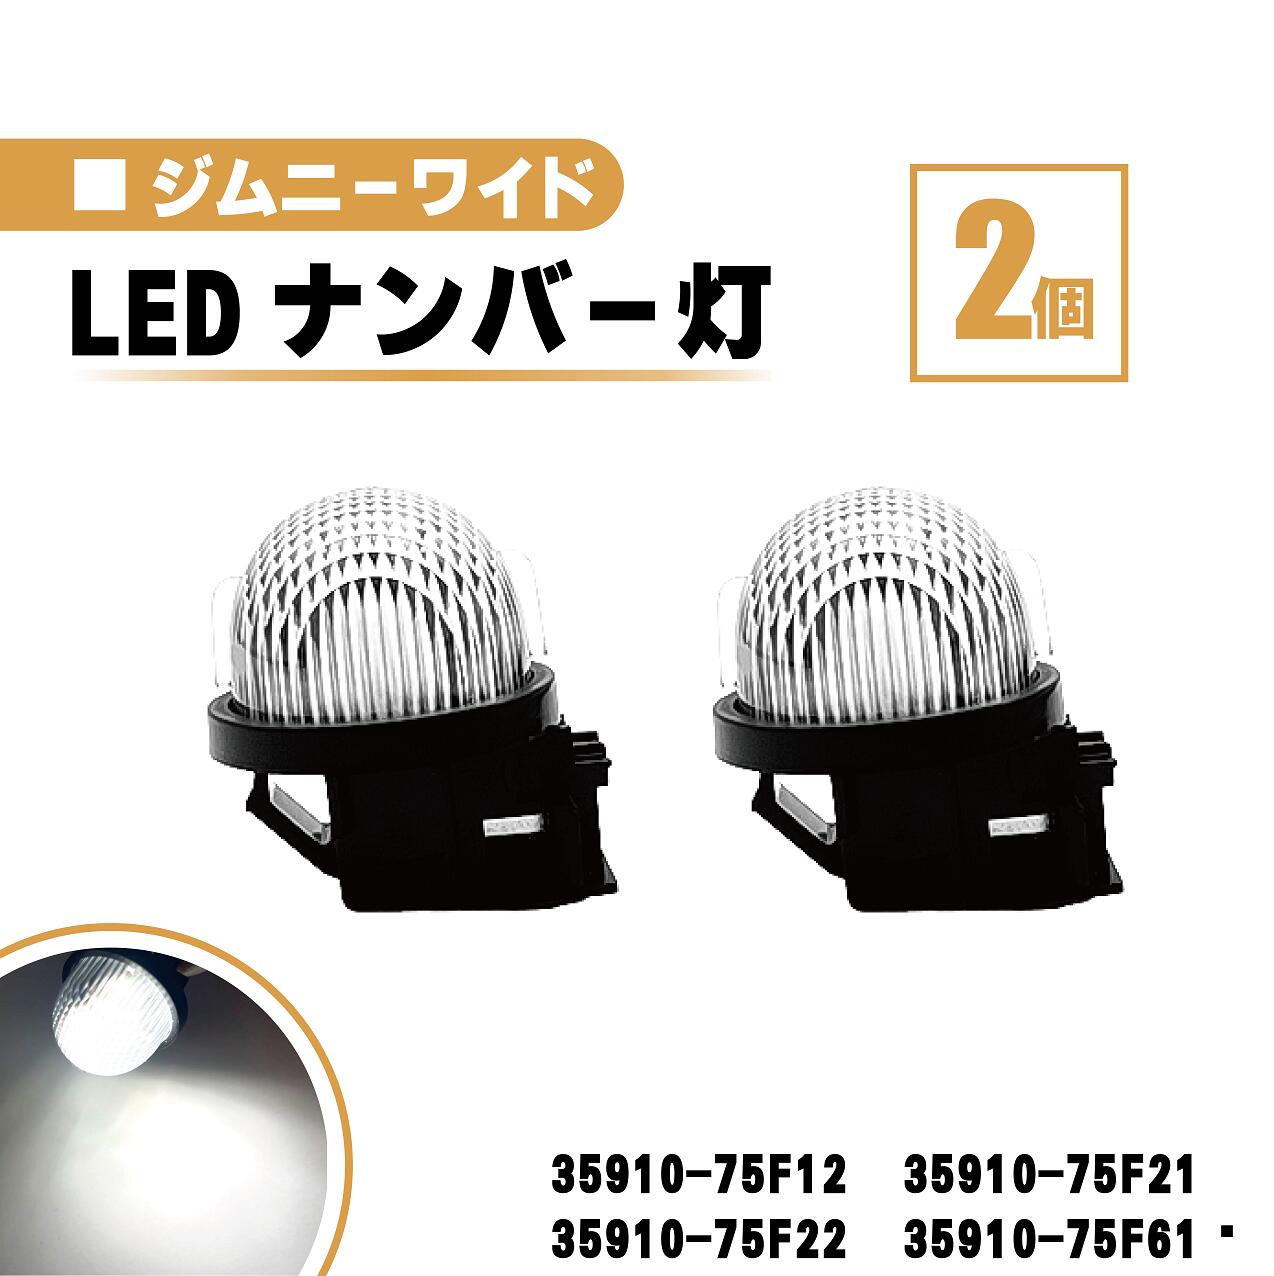 スズキ ジムニー ワイド LED ナンバー 灯 2個 セット レンズ 一体型 リア ライセンスプレート ランプ ライト ホワイト 高輝度 JB33W JB43W 35910-75F12 35910-75F21 35910-75F22 35910-75F61